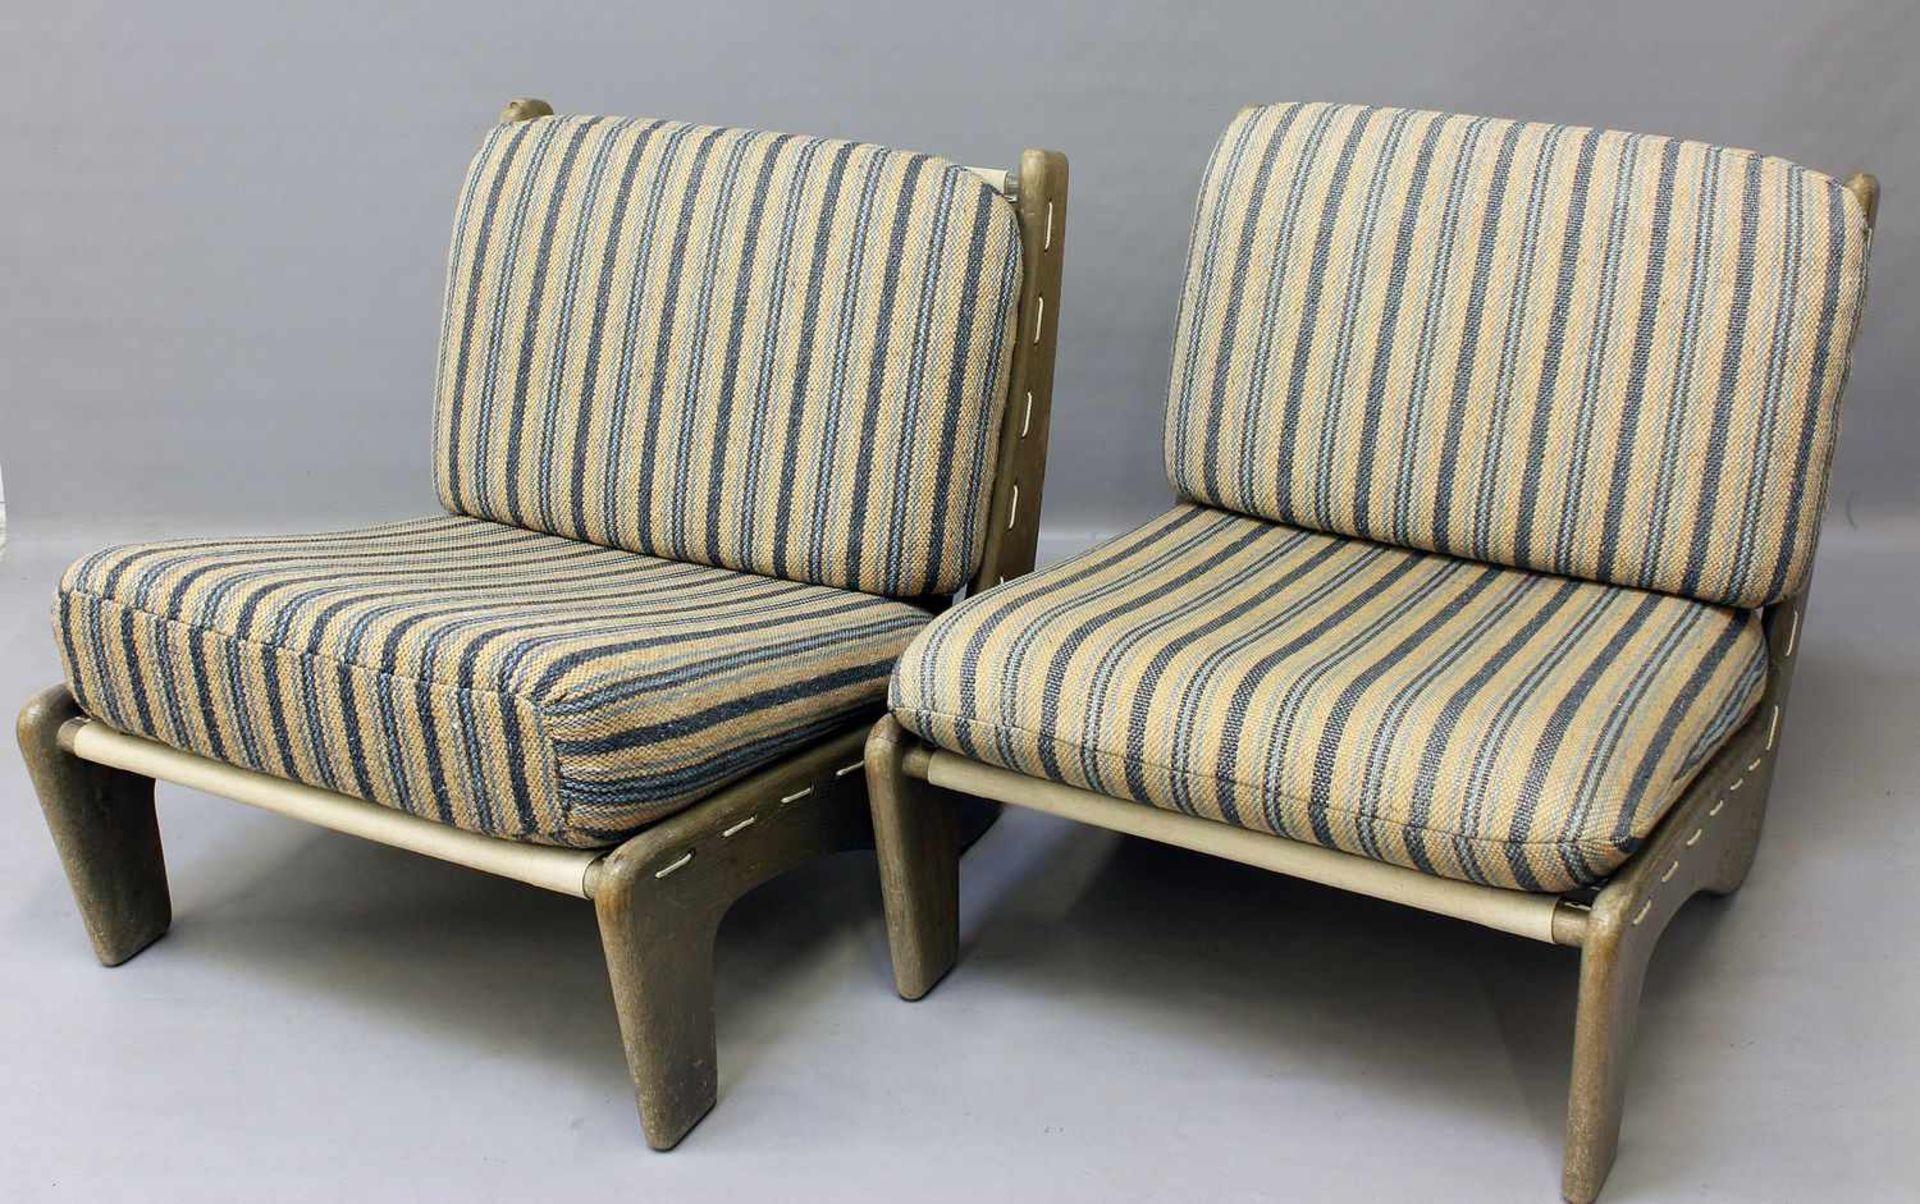 Paar Mid Century-Sessel.Hölzernes Gestell, gepolsterte Sitzauflagen. Alters- und Gebrauchsspuren,